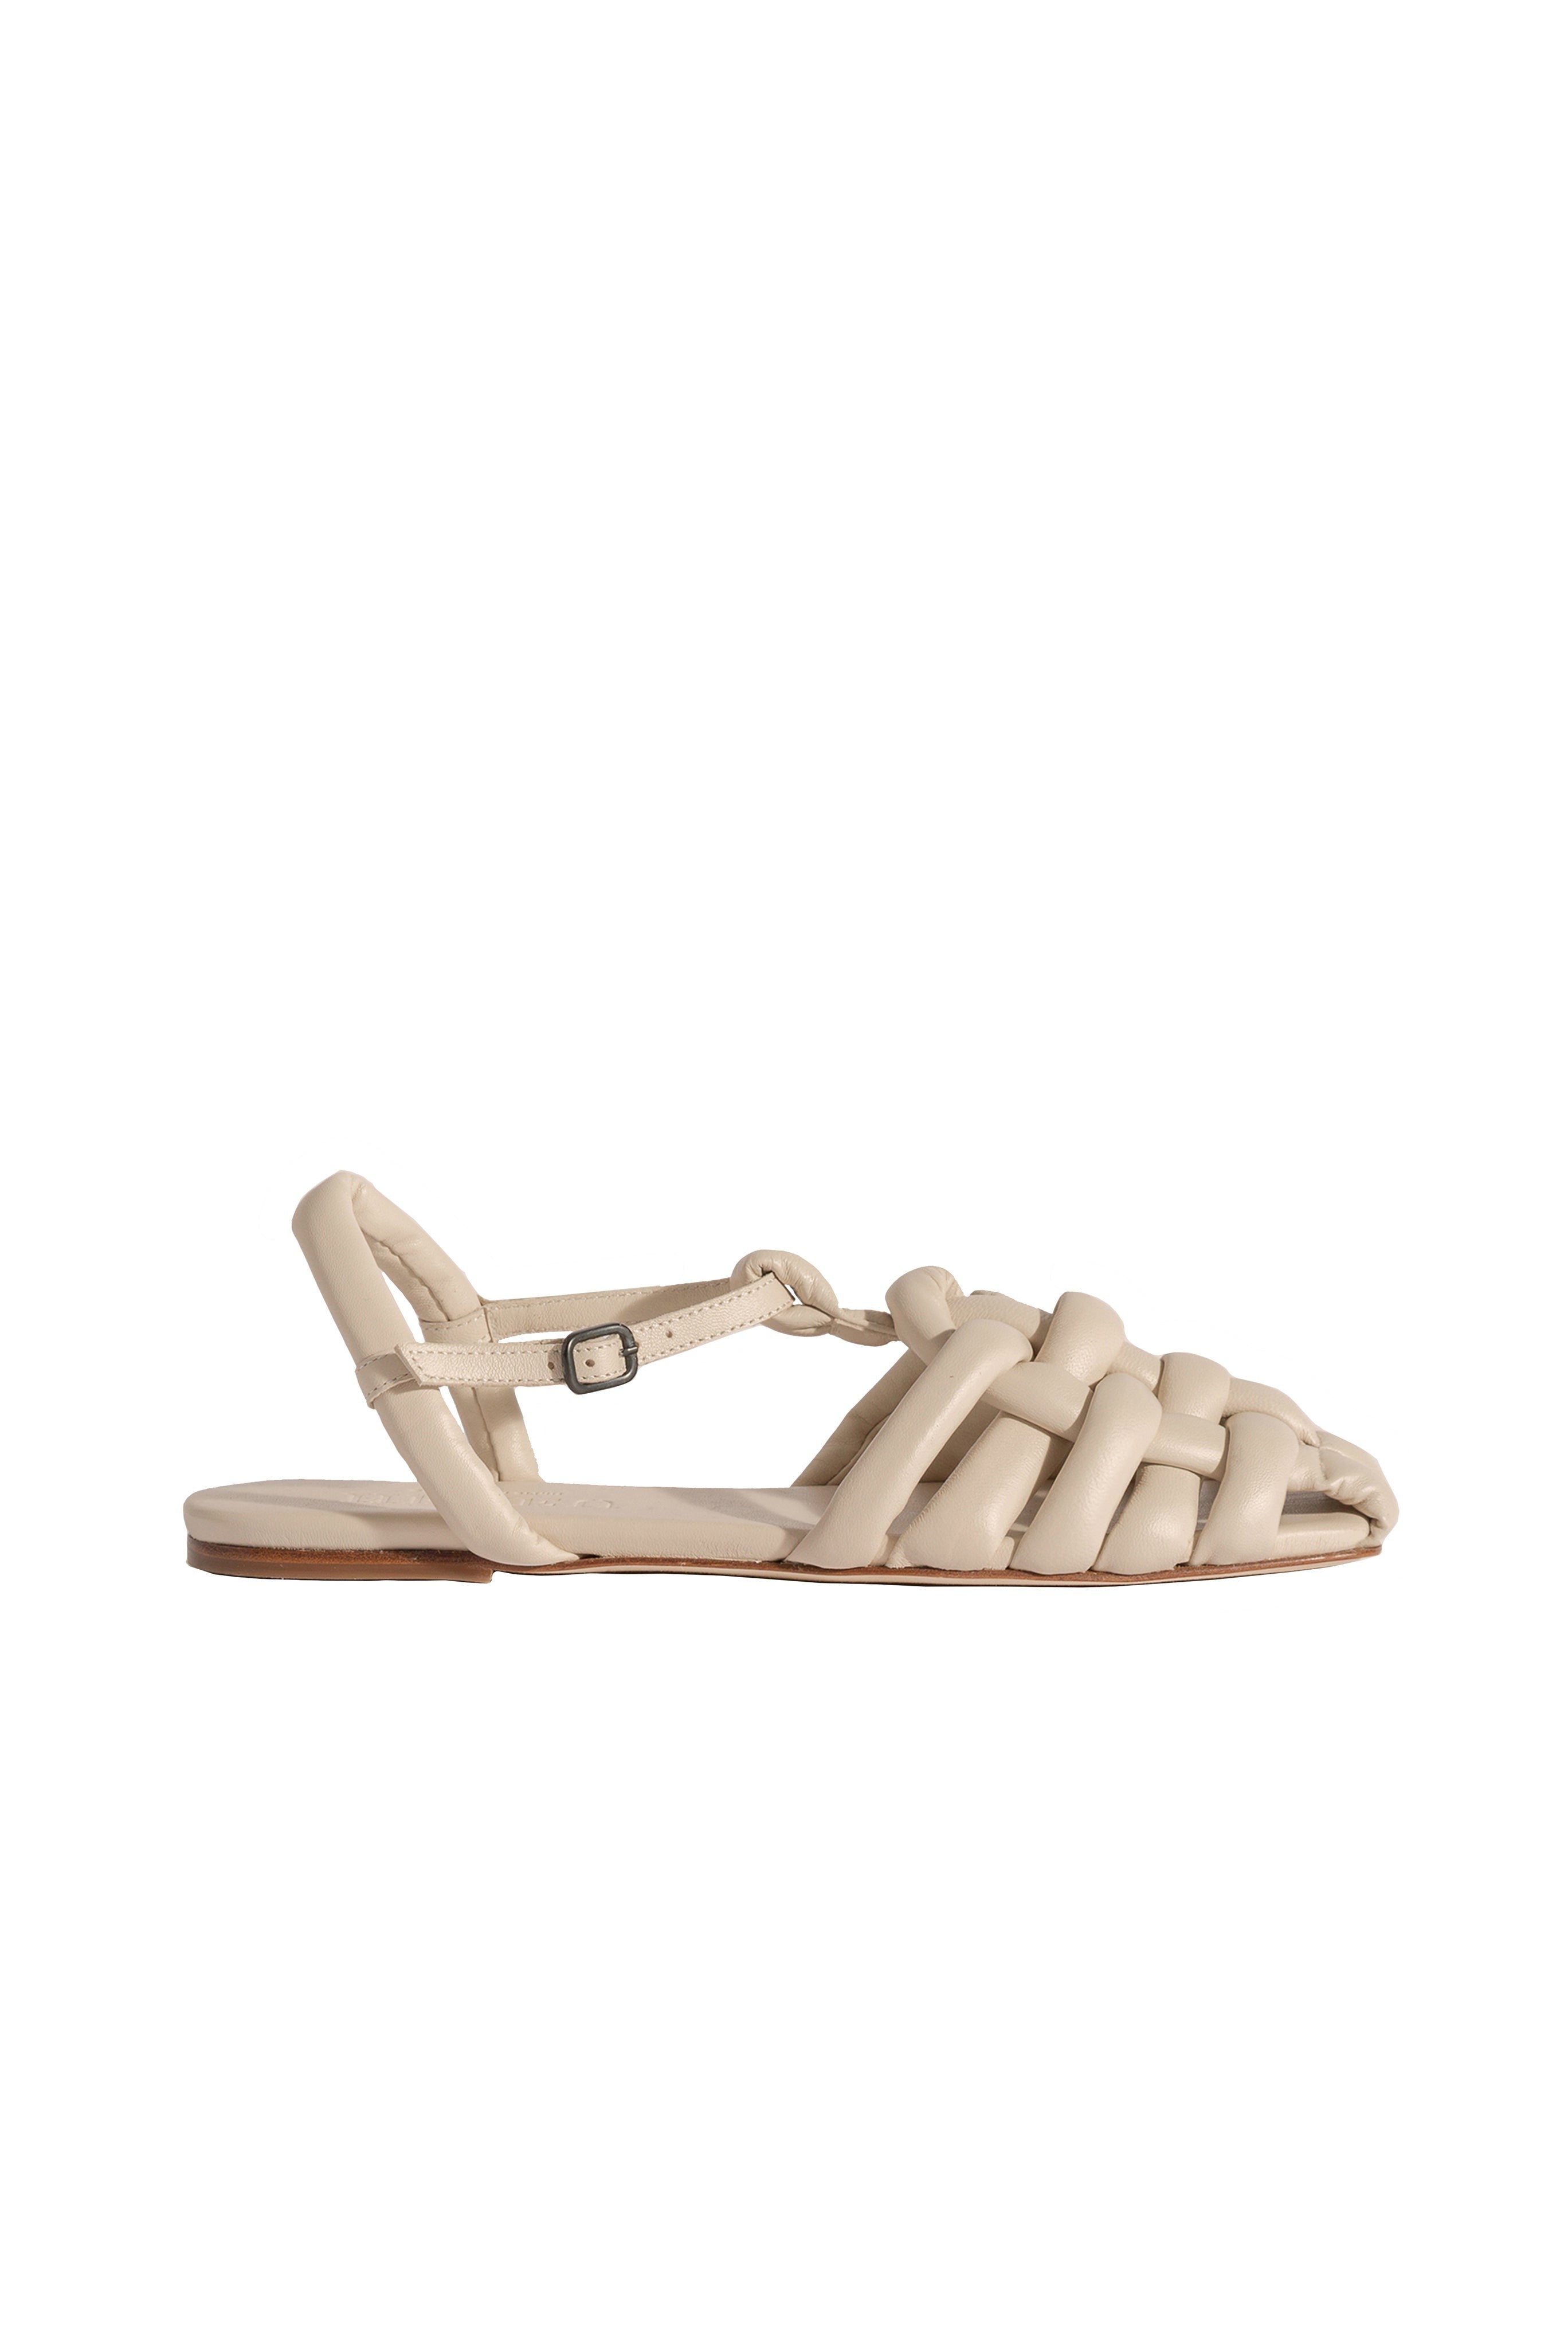 Cabersa Sandal in Cream